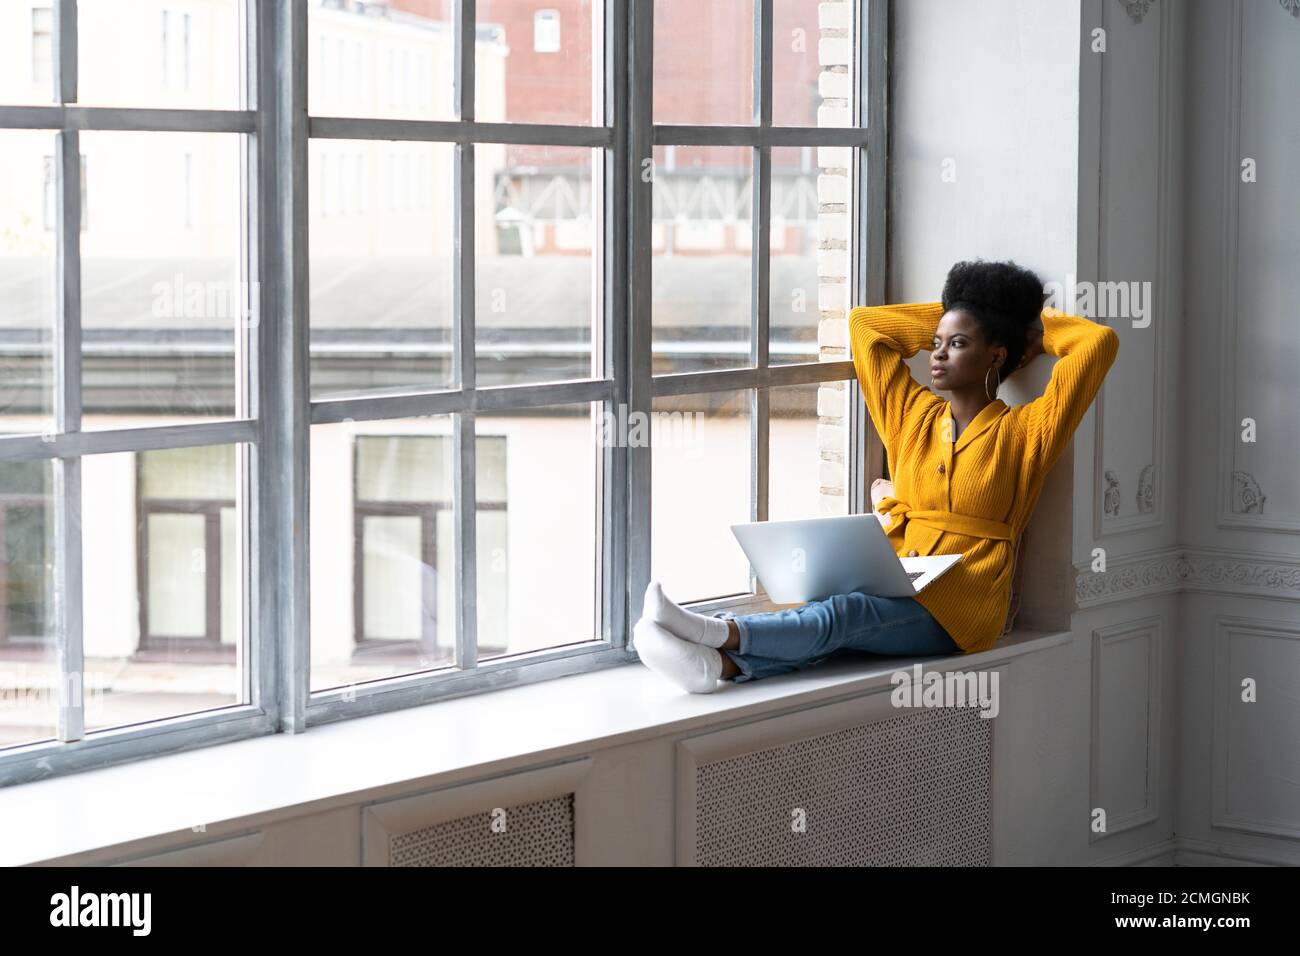 Femme millénaire afro-américaine décontractée avec une coiffure afro porter un gilet jaune, assis sur un rebord de fenêtre, se reposer, prendre une pause de travail sur un ordinateur portable, Banque D'Images